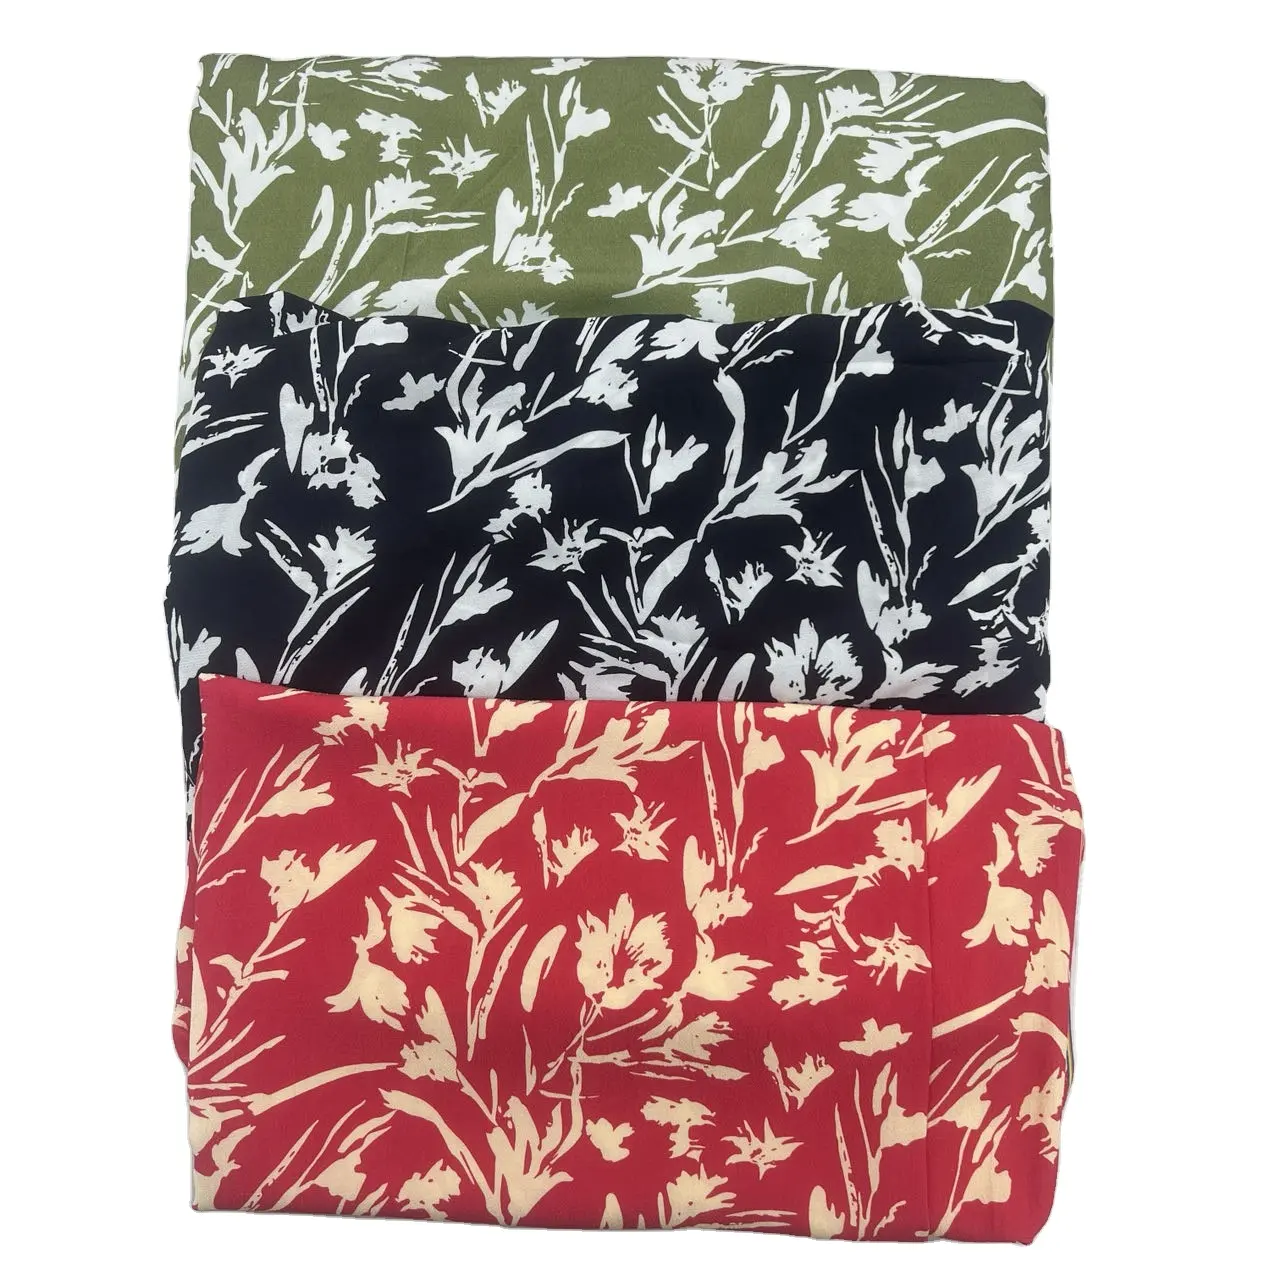 Nouveau lot de stock de tissu à impression numérique de style floral viscose rayonne crêpe tissus imprimés pour robes t-hirts pantalons